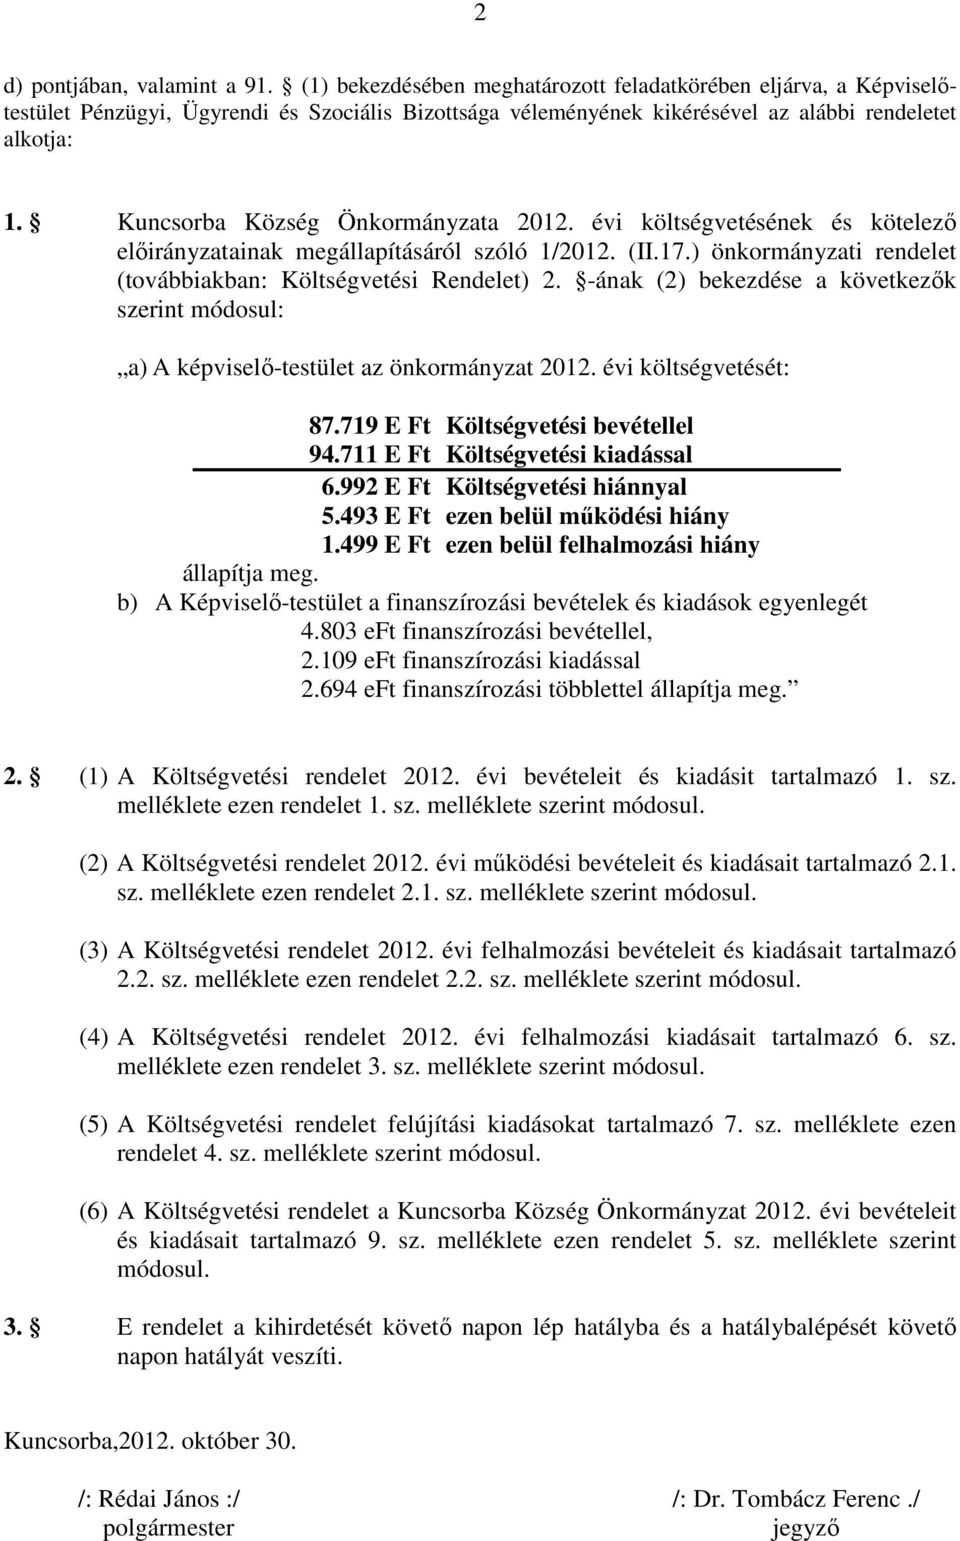 Kuncsorba Község Önkormányzata 2012. évi költségvetésének és kötelezı elıirányzatainak megállapításáról szóló 1/2012. (II.17.) önkormányzati rendelet (továbbiakban: Költségvetési Rendelet) 2.